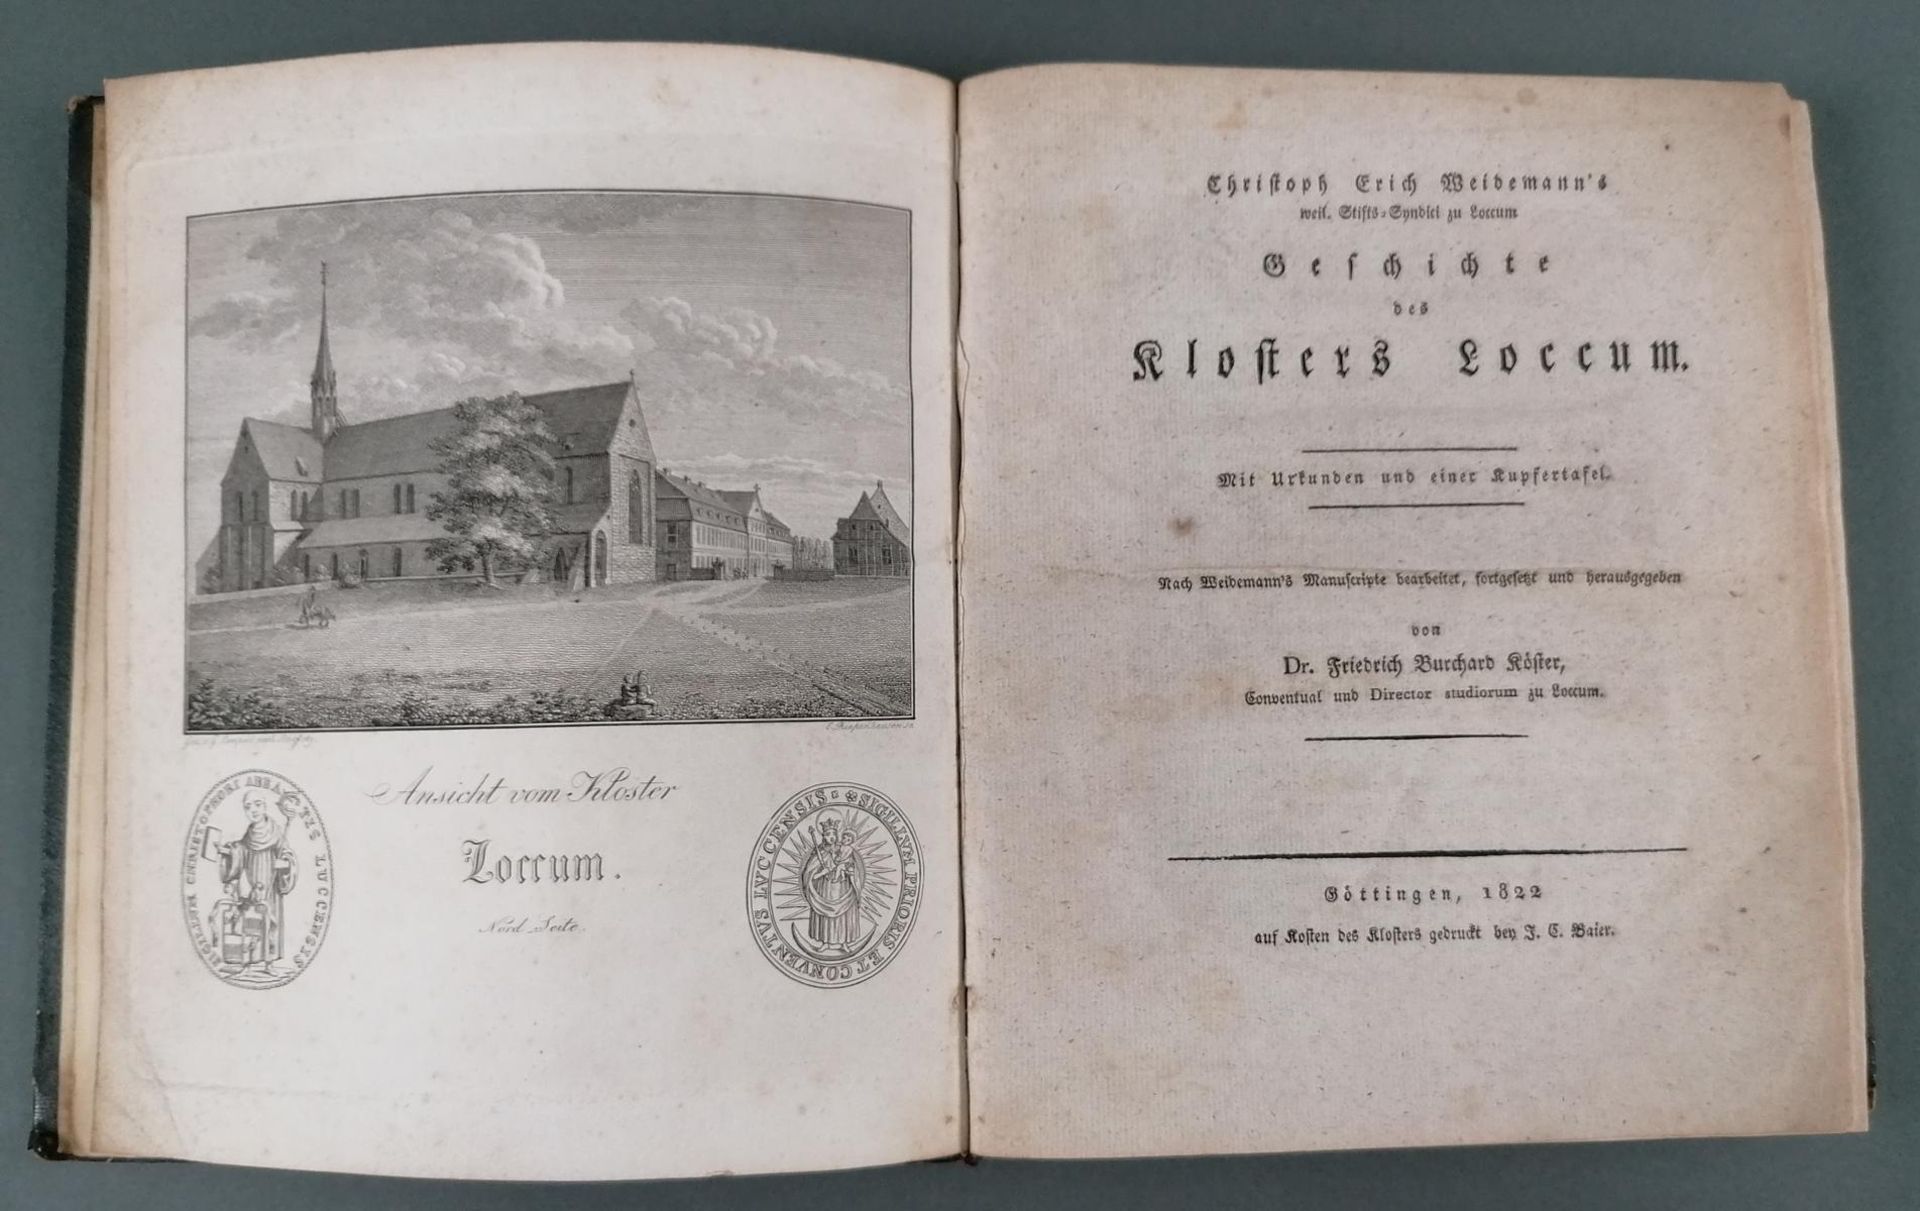 Geschichte des Kloster Loccum 1822 - Image 2 of 4